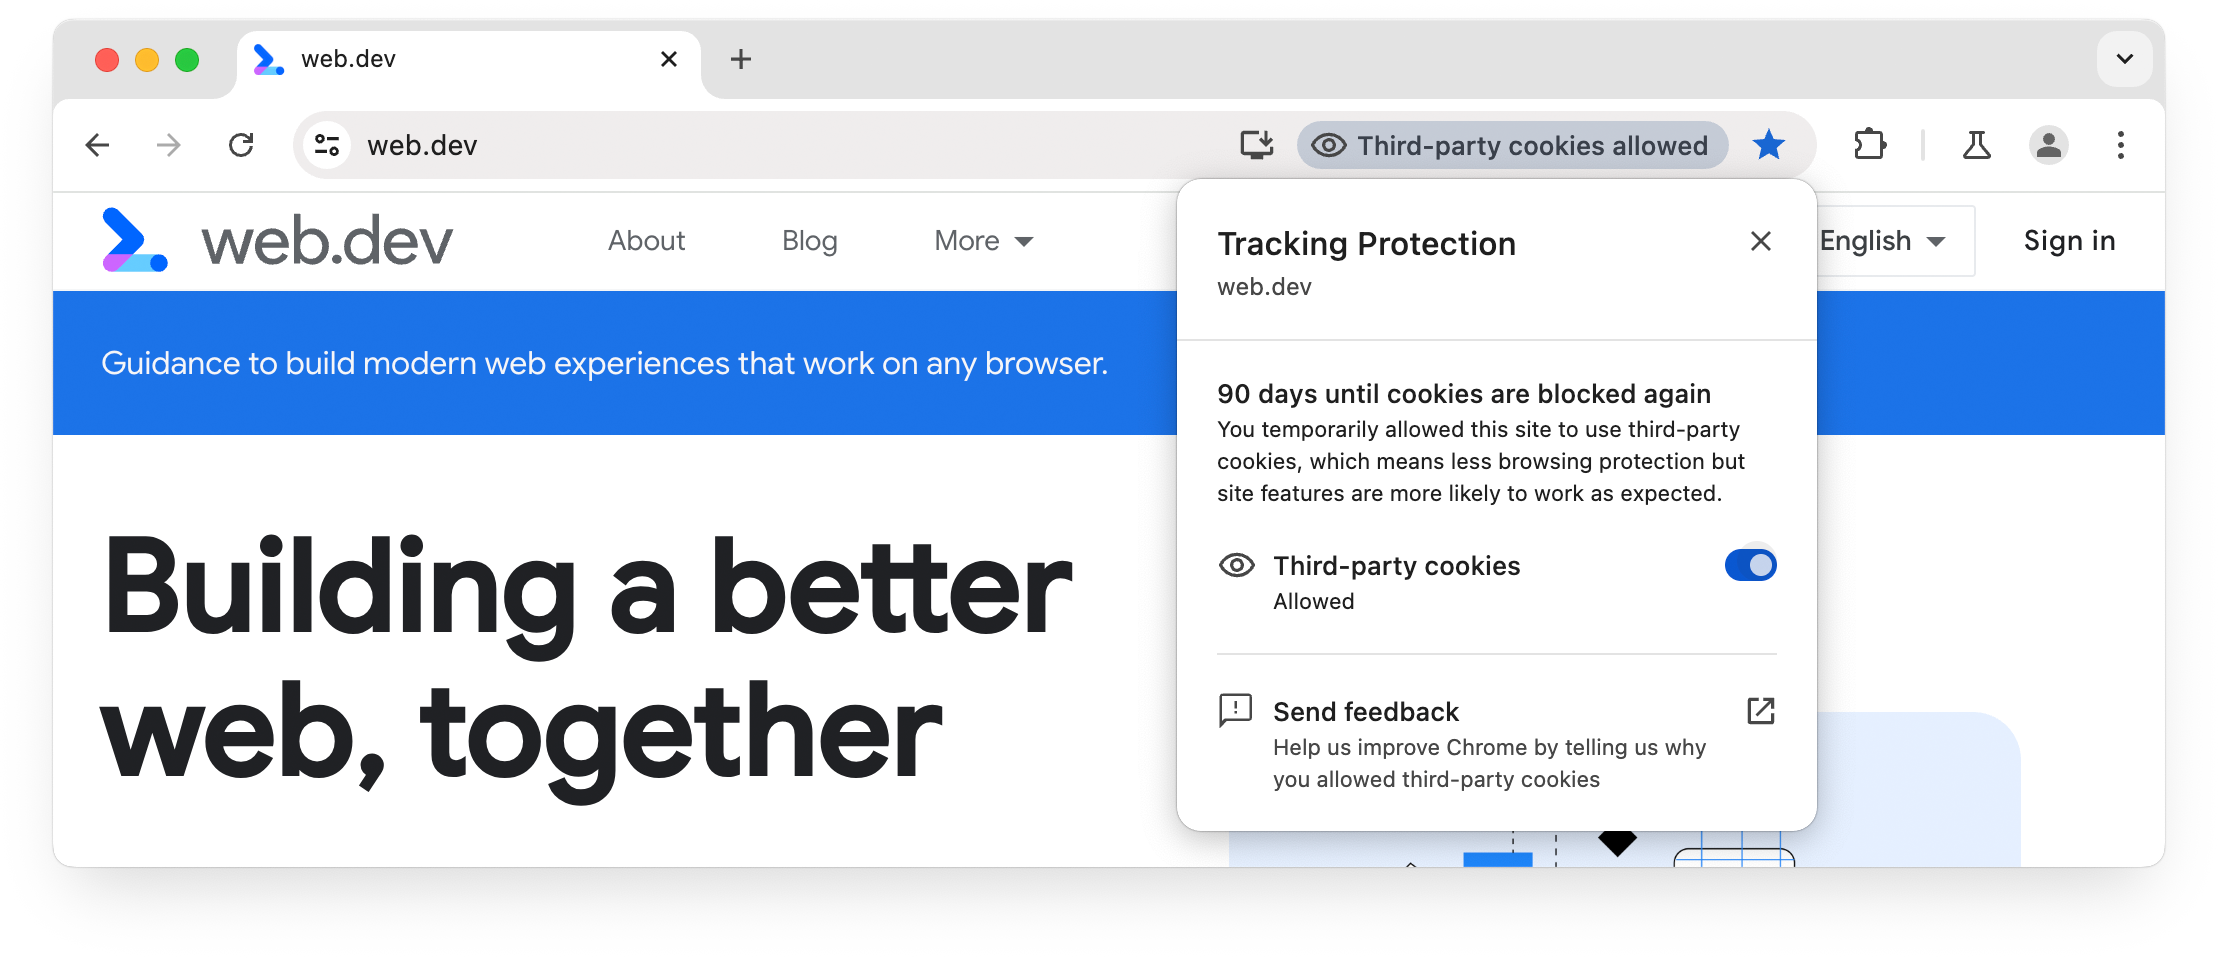 Chrome ट्रैकिंग सुरक्षा का यूज़र इंटरफ़ेस (यूआई): मौजूदा साइट के लिए तीसरे पक्ष की कुकी को अनुमति दी गई है